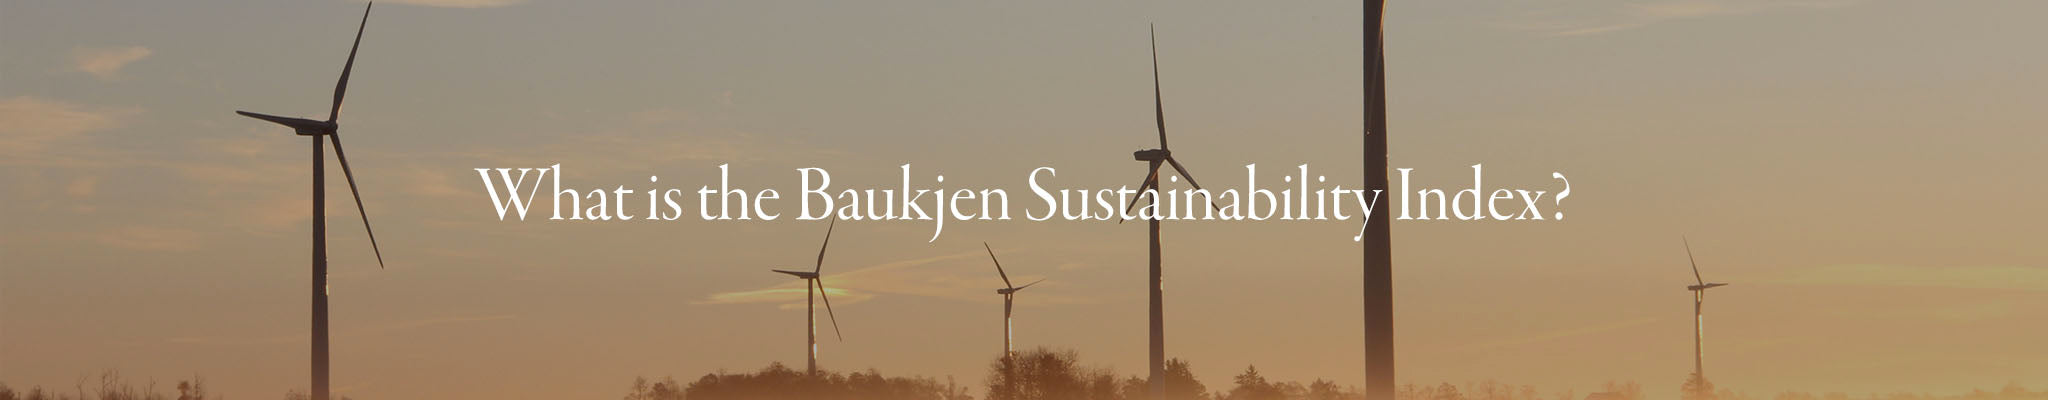 What is the Baukjen Sustainability Index?